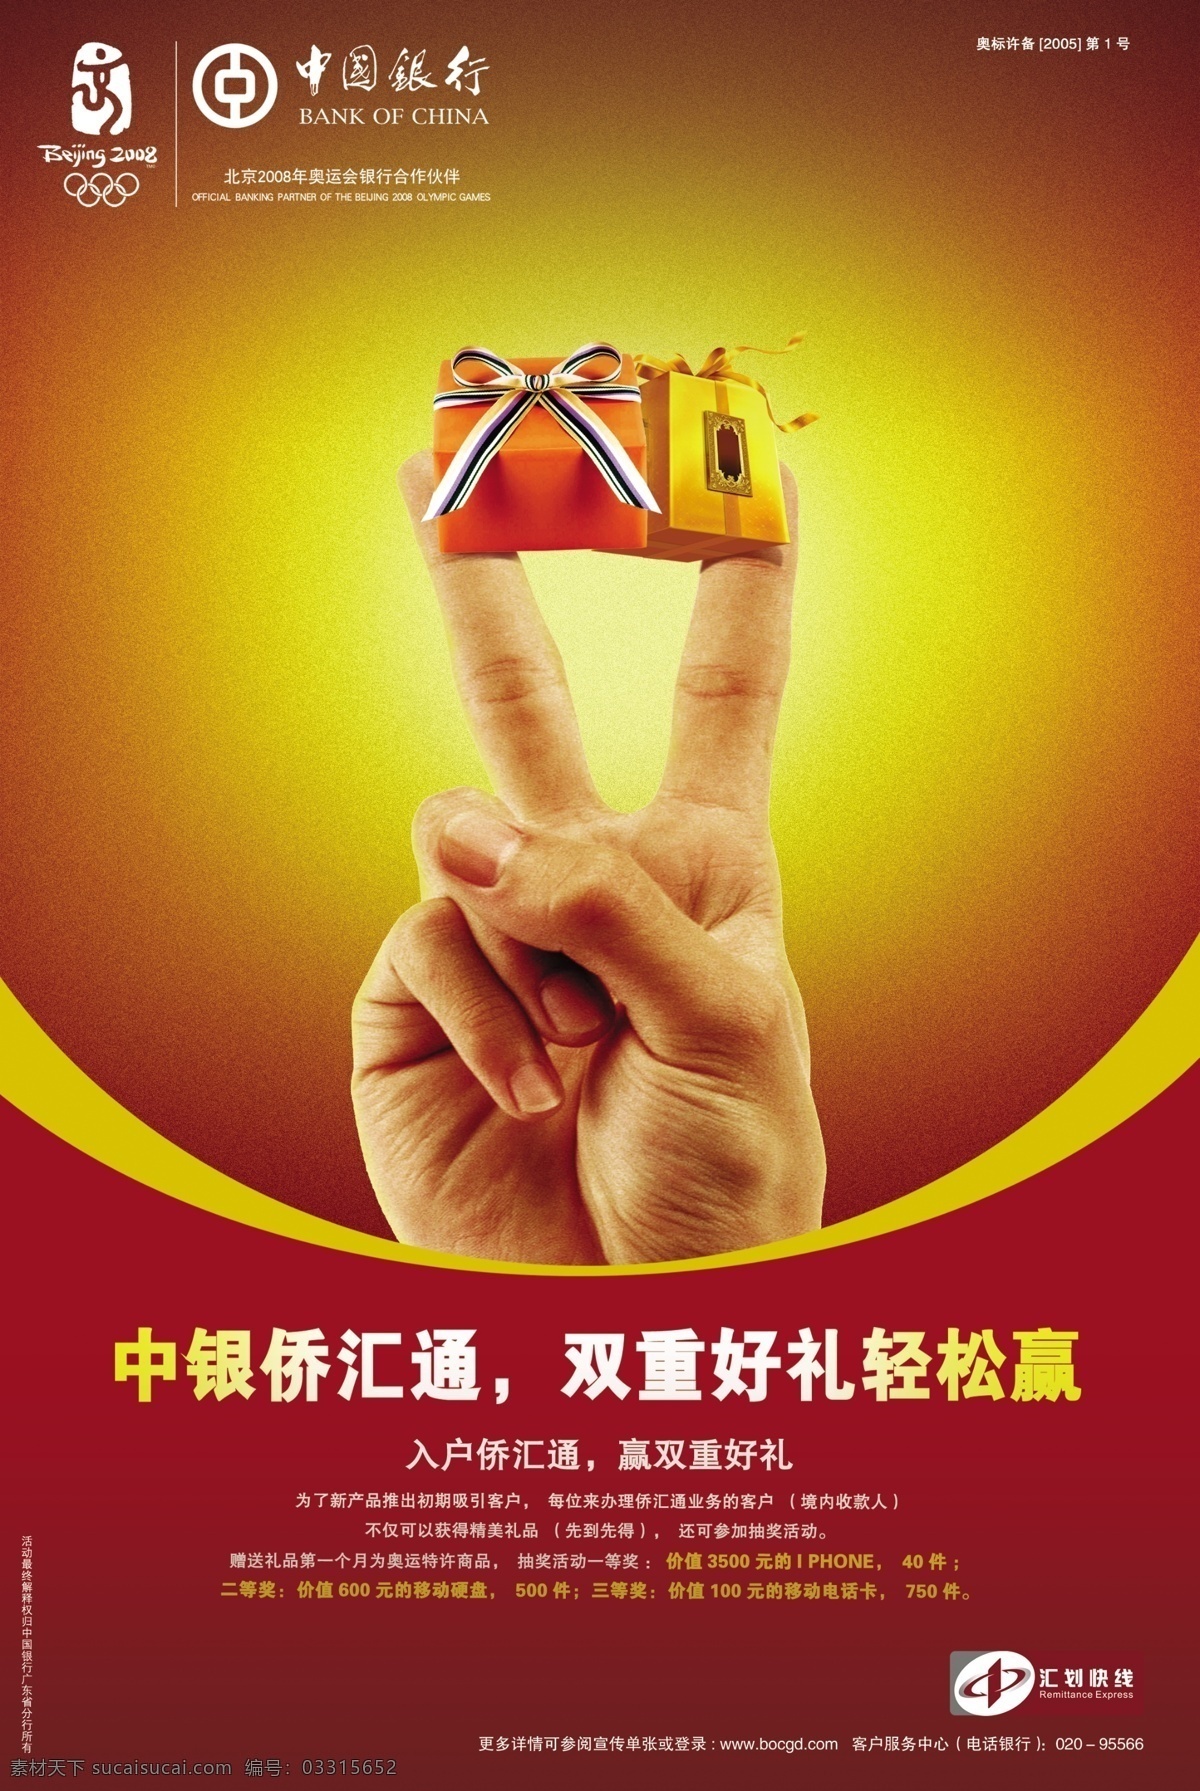 中国银行 中国银行展板 中国银行广告 logo 写真 展板 展板模板 广告设计模板 源文件 红色